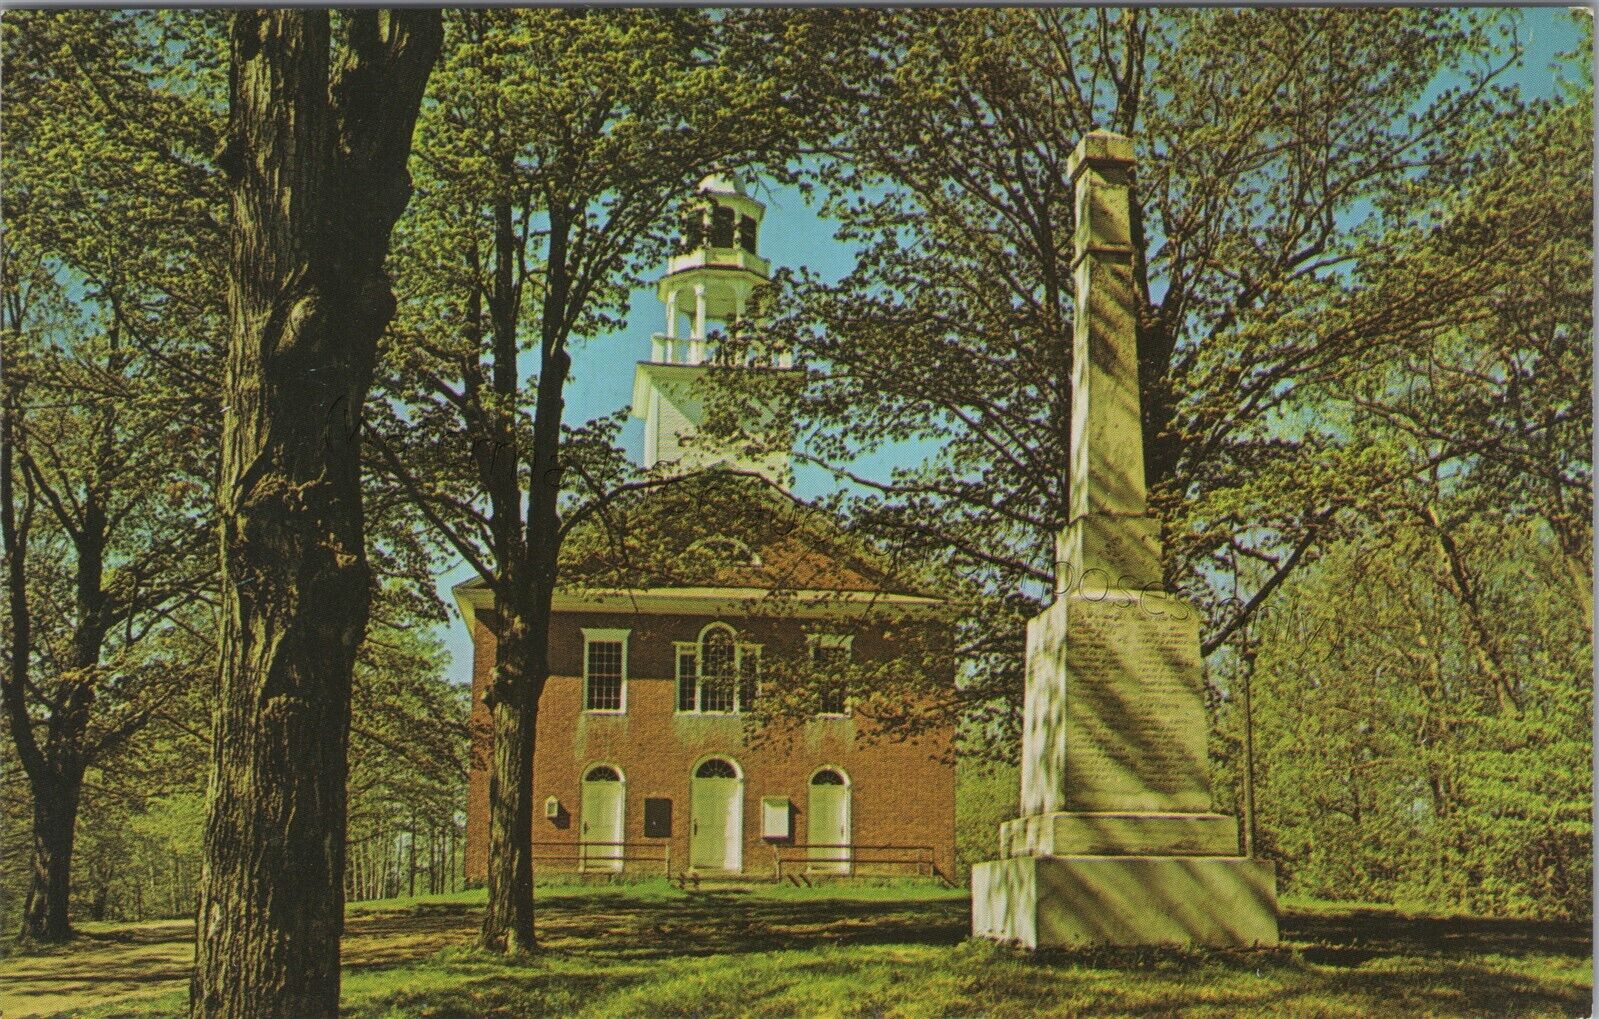 Weathersfield, VT: Meeting House + Vermont Civil War monument, vintage postcard